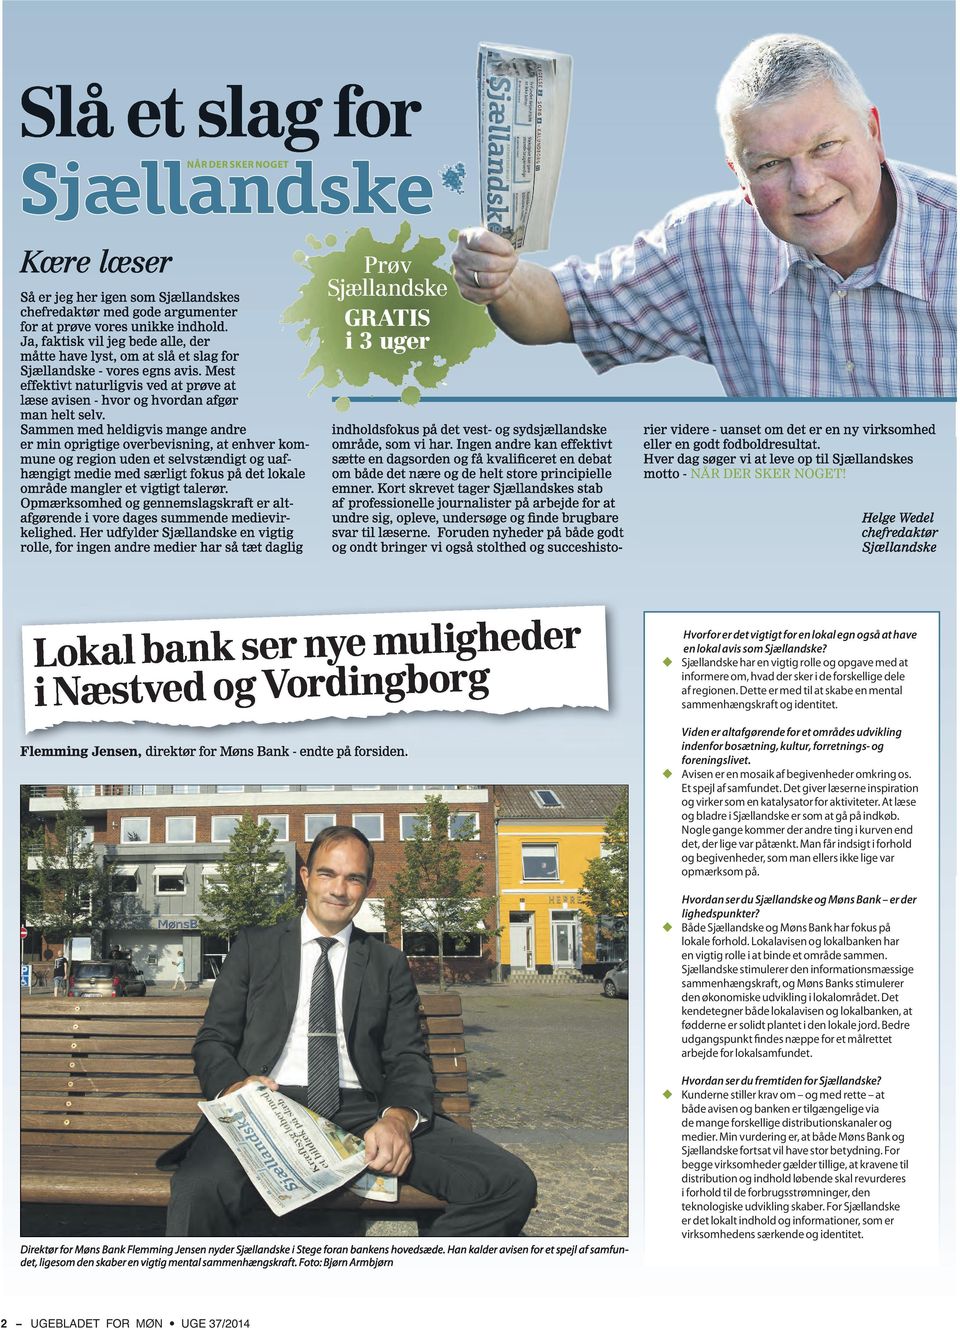 Flemming Jensen direktør for Møns Bank endte på forsiden Viden er altafgørende for et områdes udvikling indenfor bosætning, kultur, forretnings- og foreningslivet.